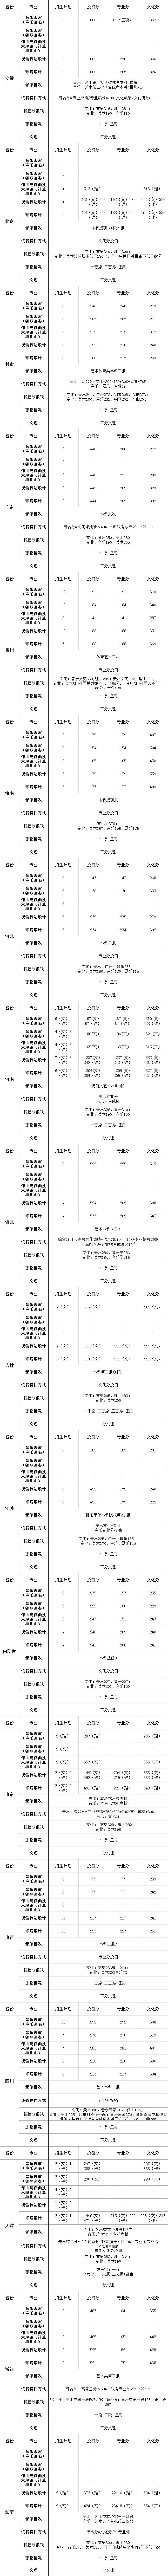 2019北京科技大学天津学院艺术类录取分数线(含2017-2019历年)